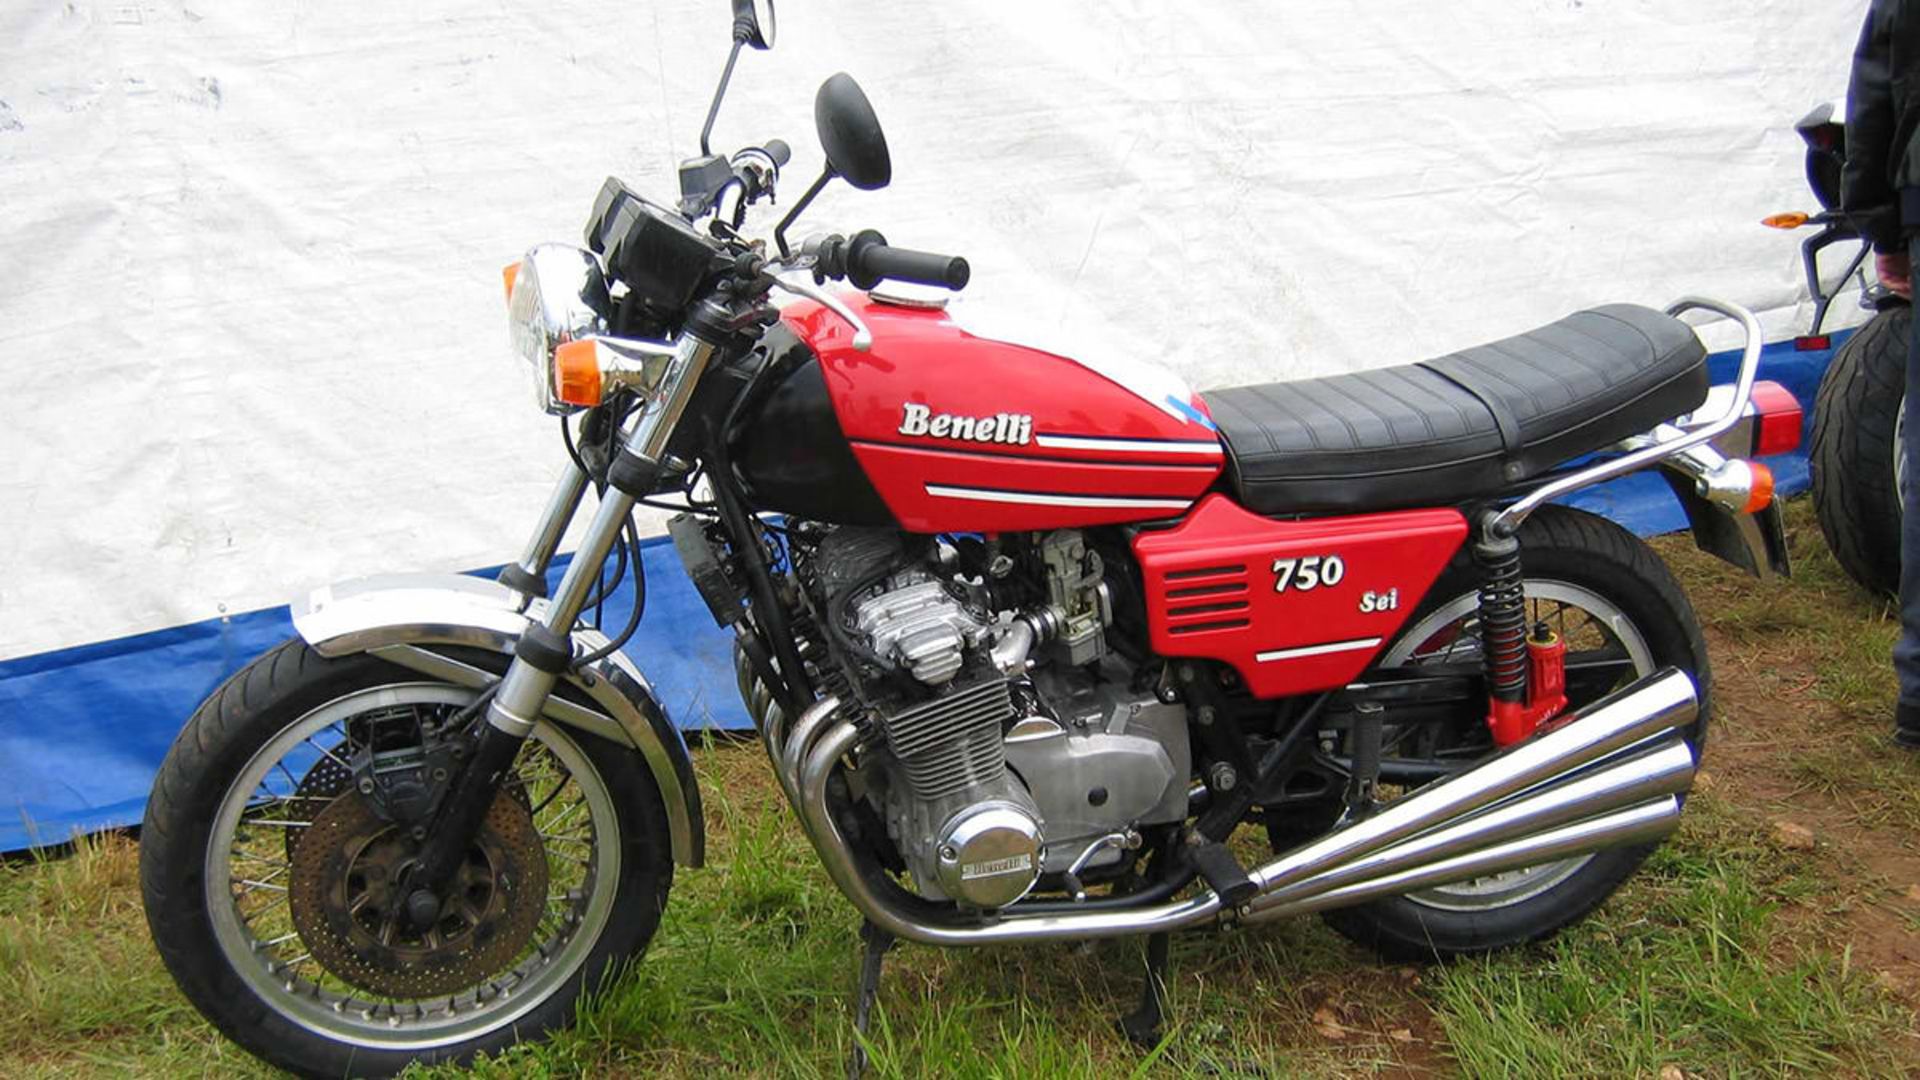 Benelli 750 Sei / موتورسیکلت بنلی